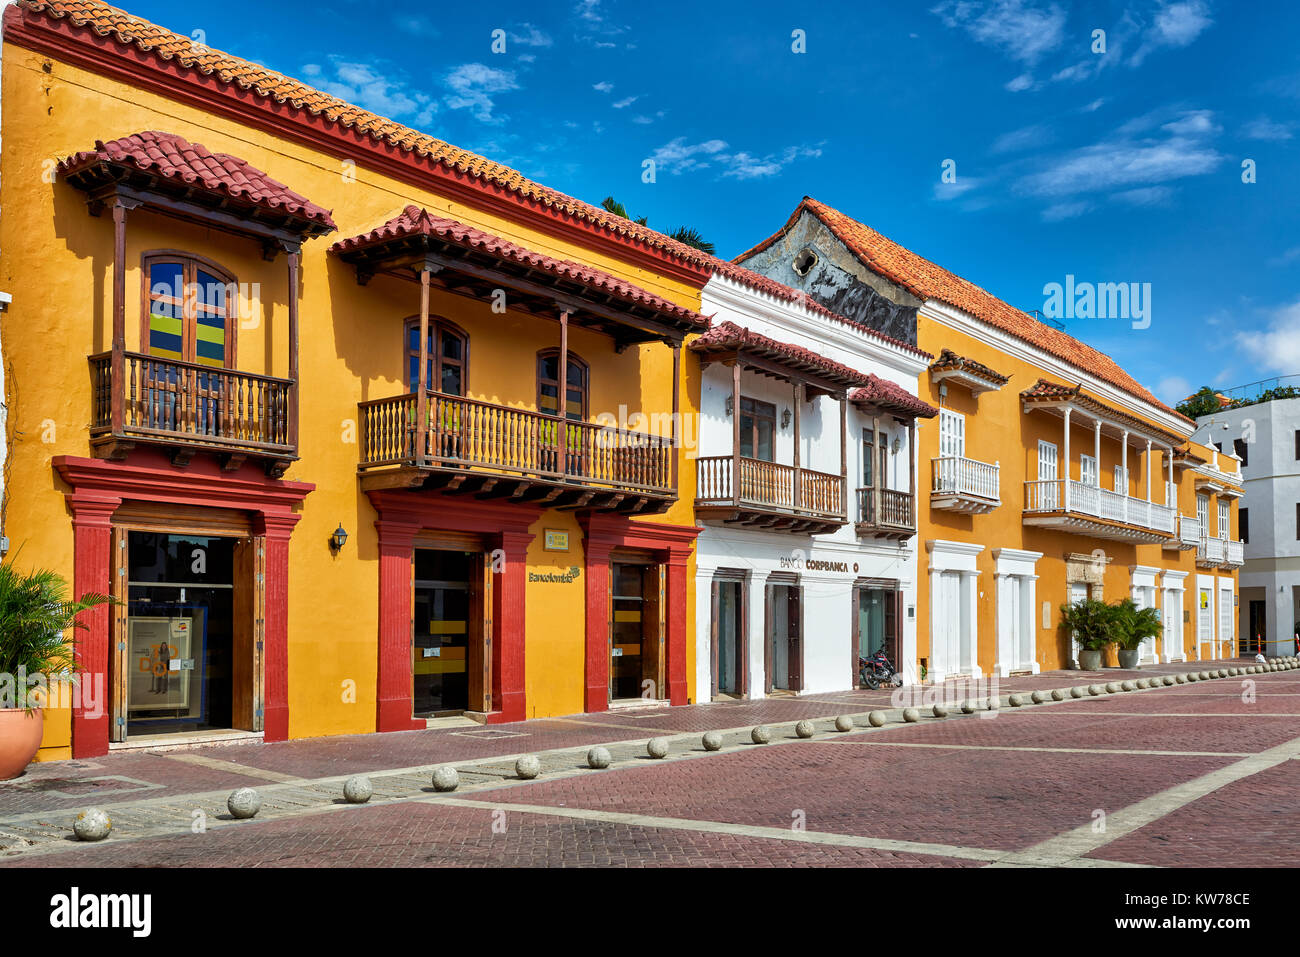 historical facade at Plaza de la Aduana, Cartagena de Indias, Colombia, South America Stock Photo